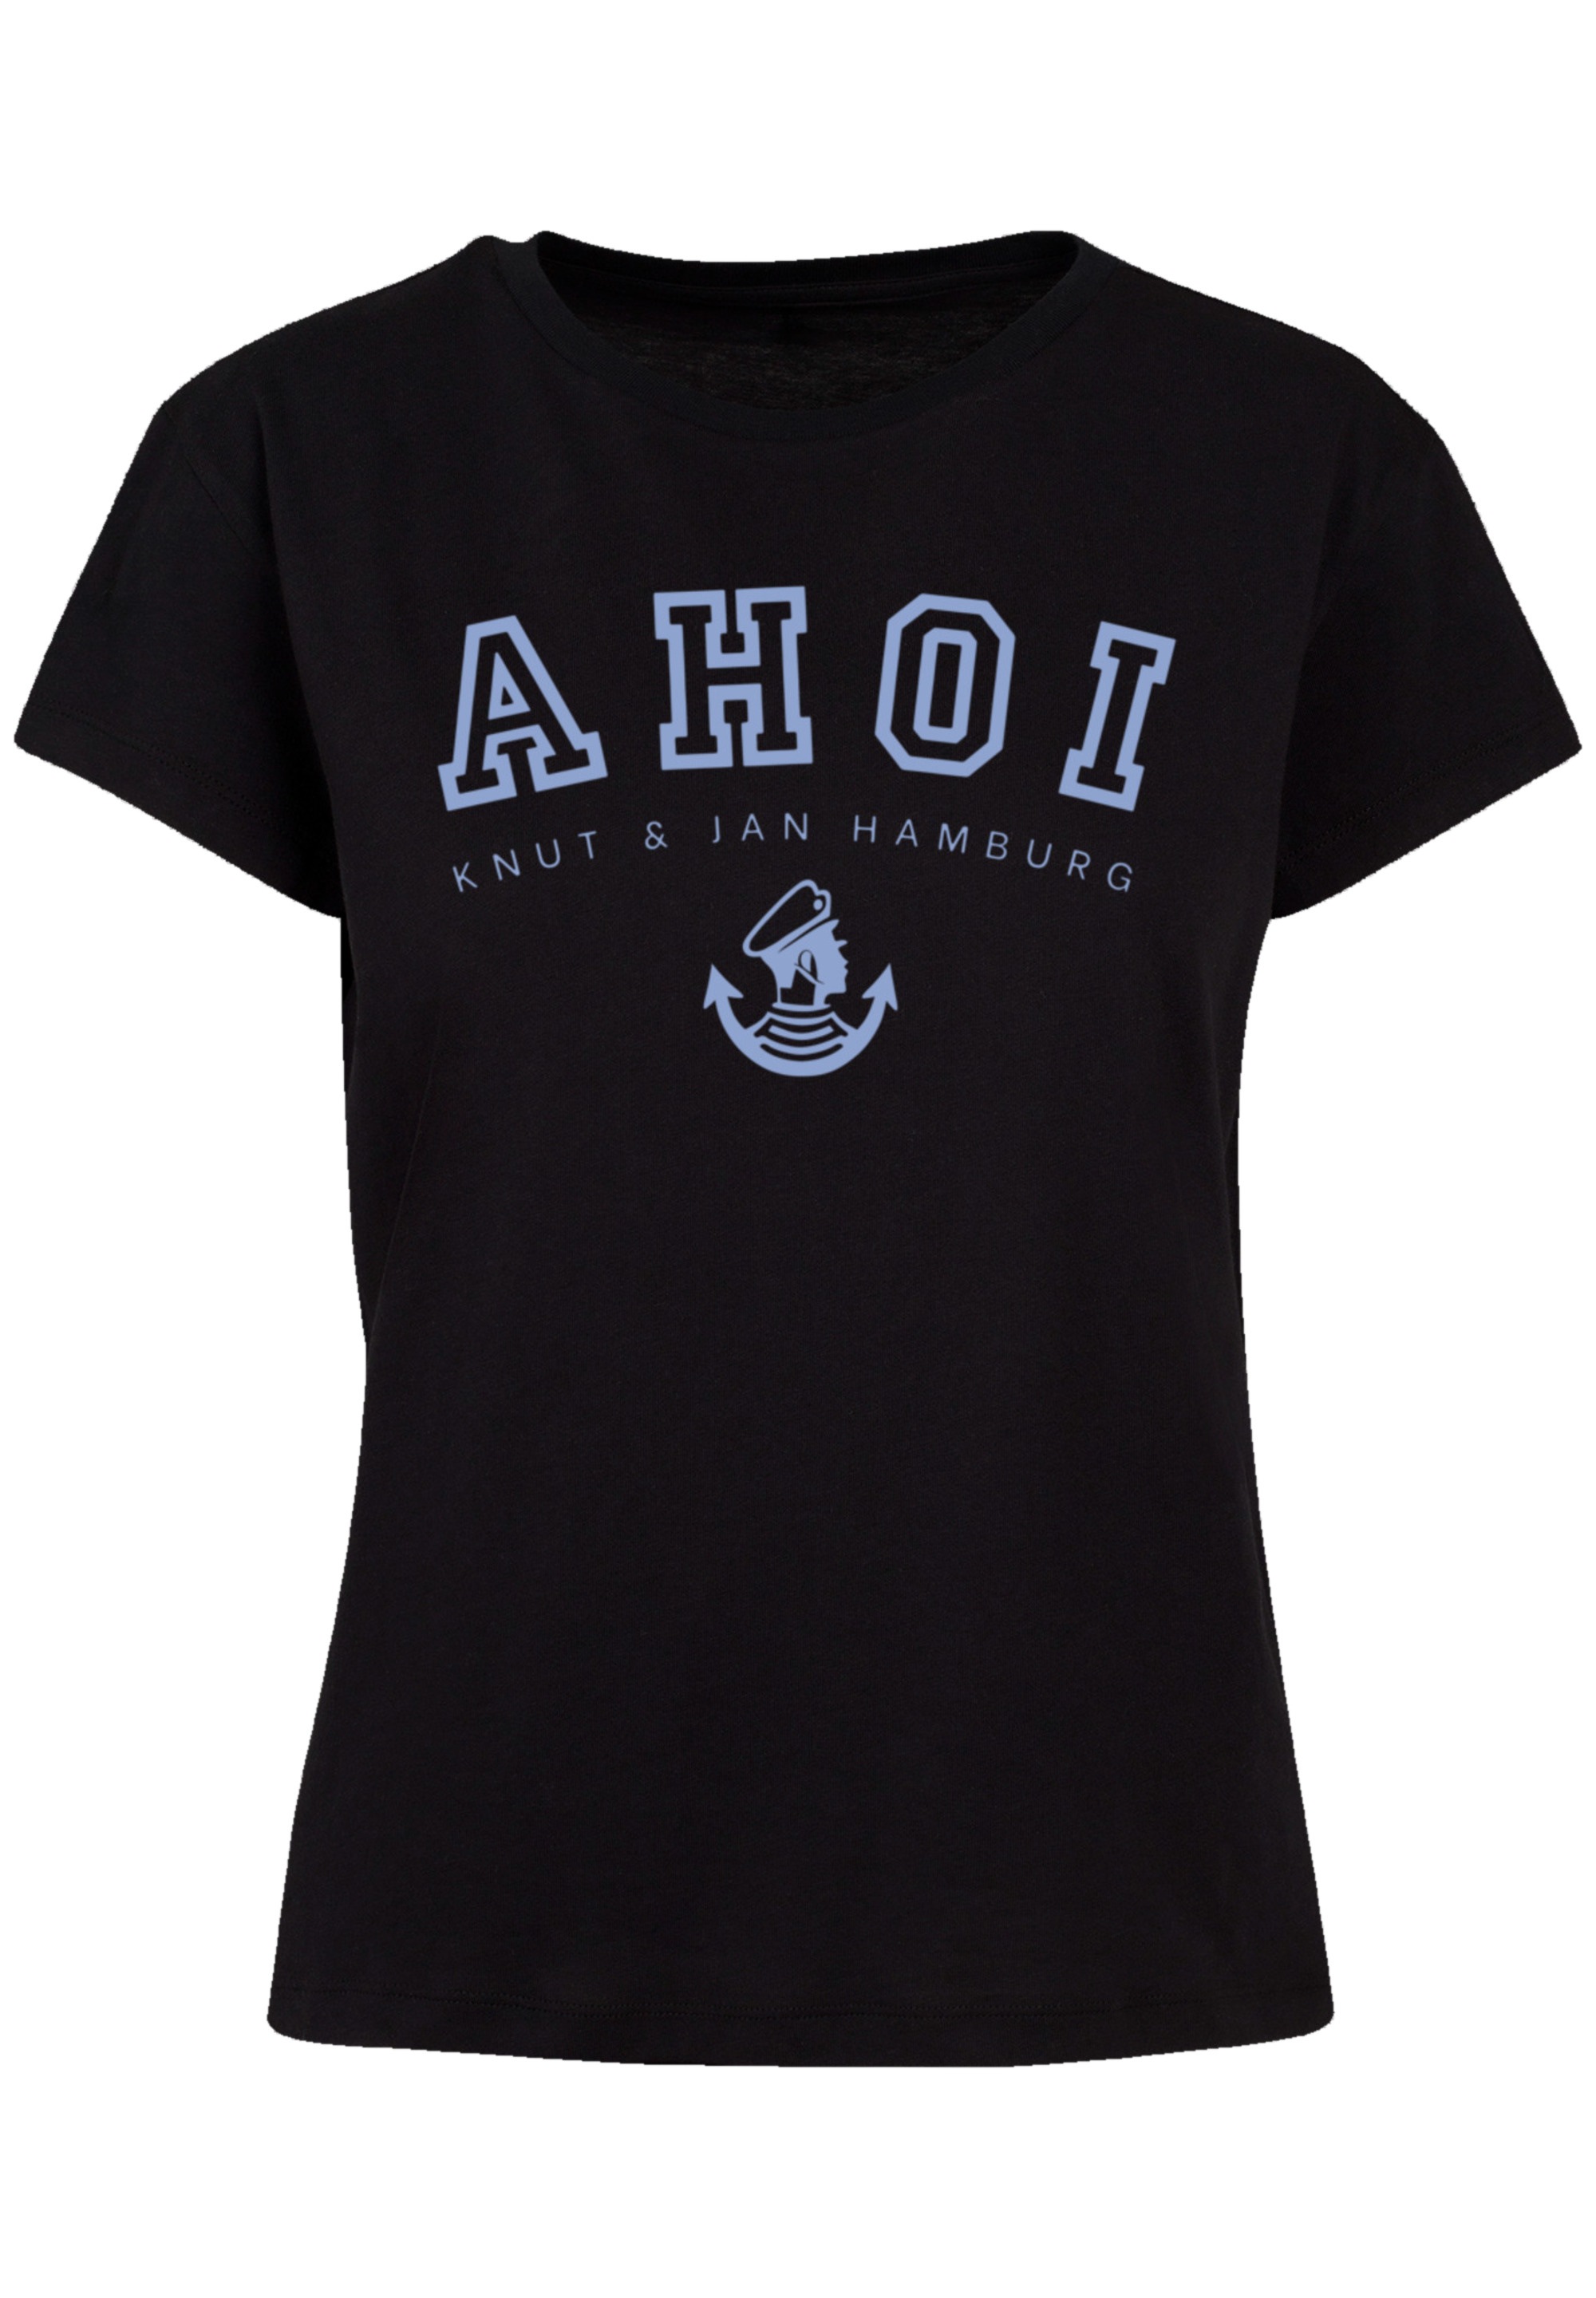 T-Shirt Jan Hamburg«, Knut Print kaufen »Ahoi & F4NT4STIC